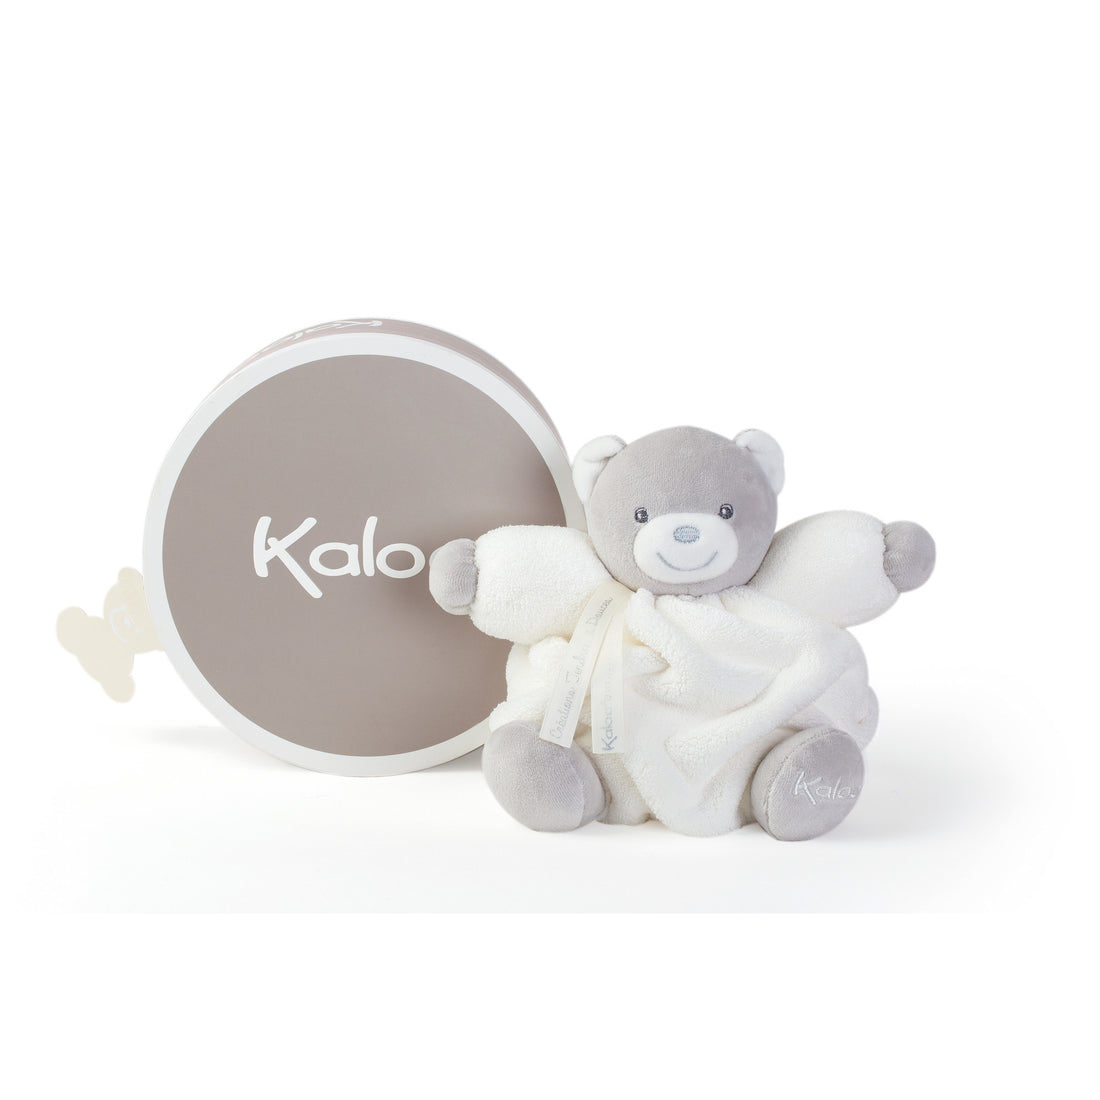 kaloo-plume-small-cream-chubby-bear- (2)